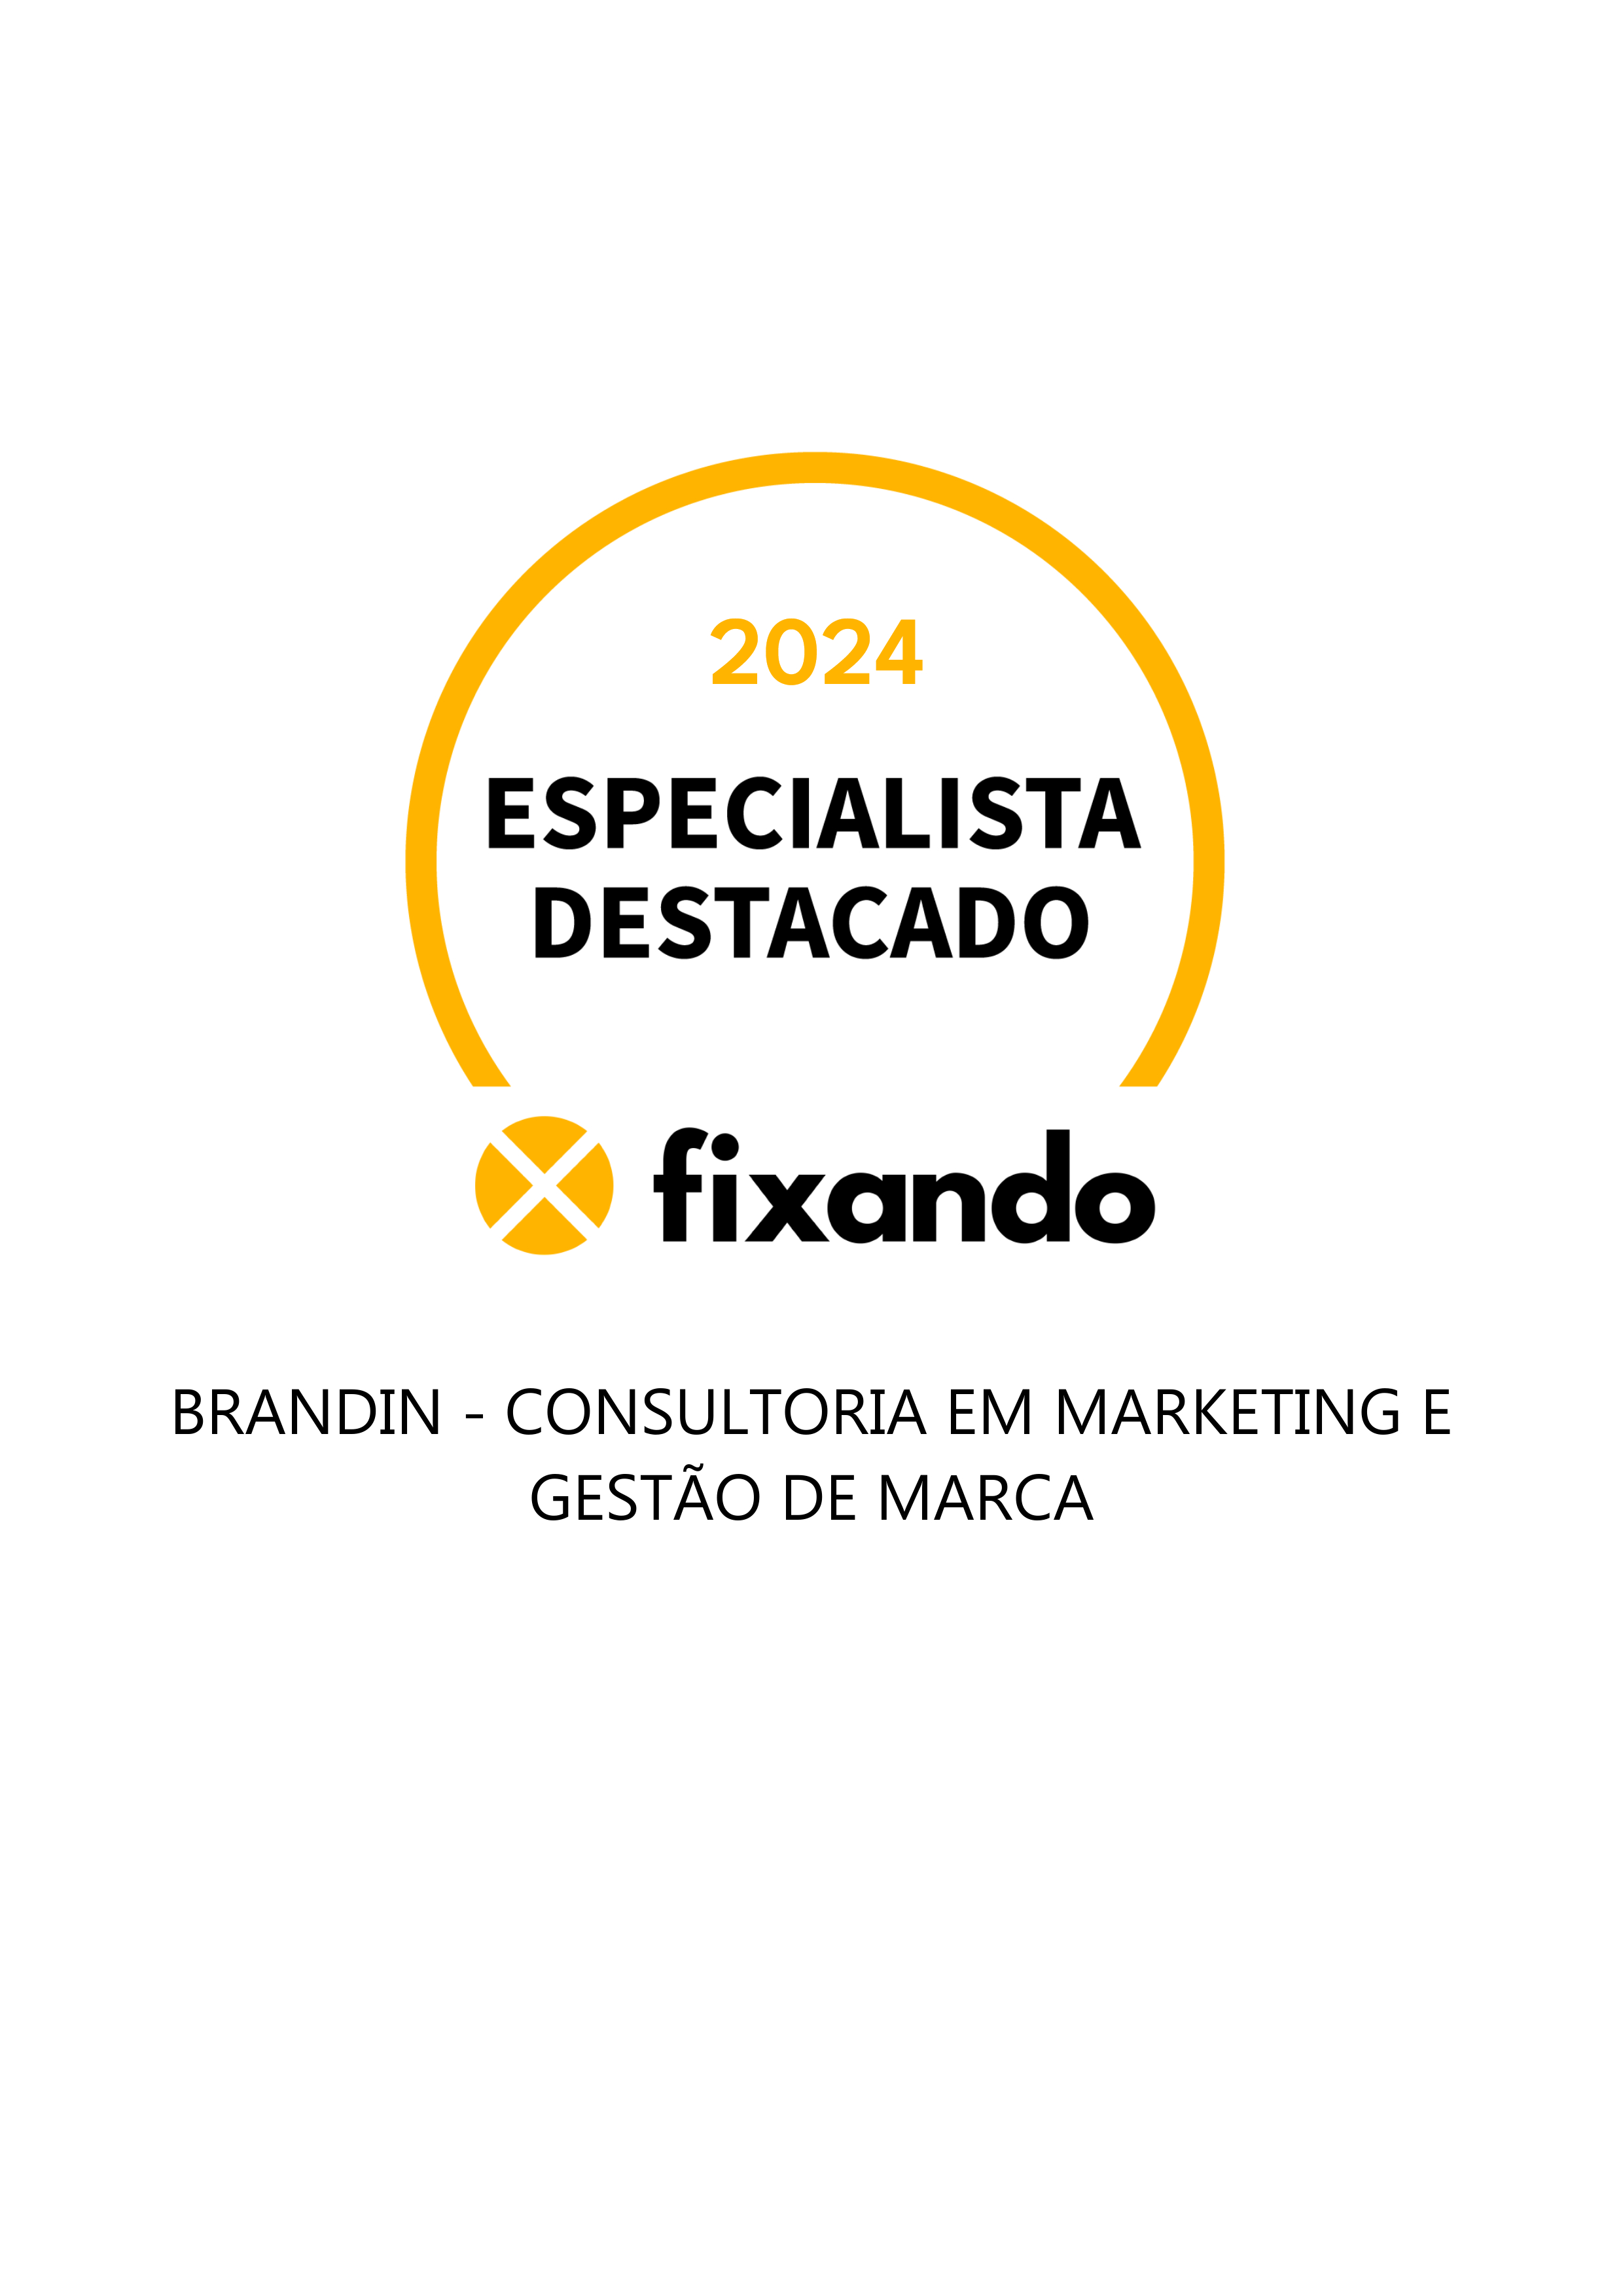 brandIn - Consultoria em Marketing e Gestão de Marca - Torres Vedras - Marketing